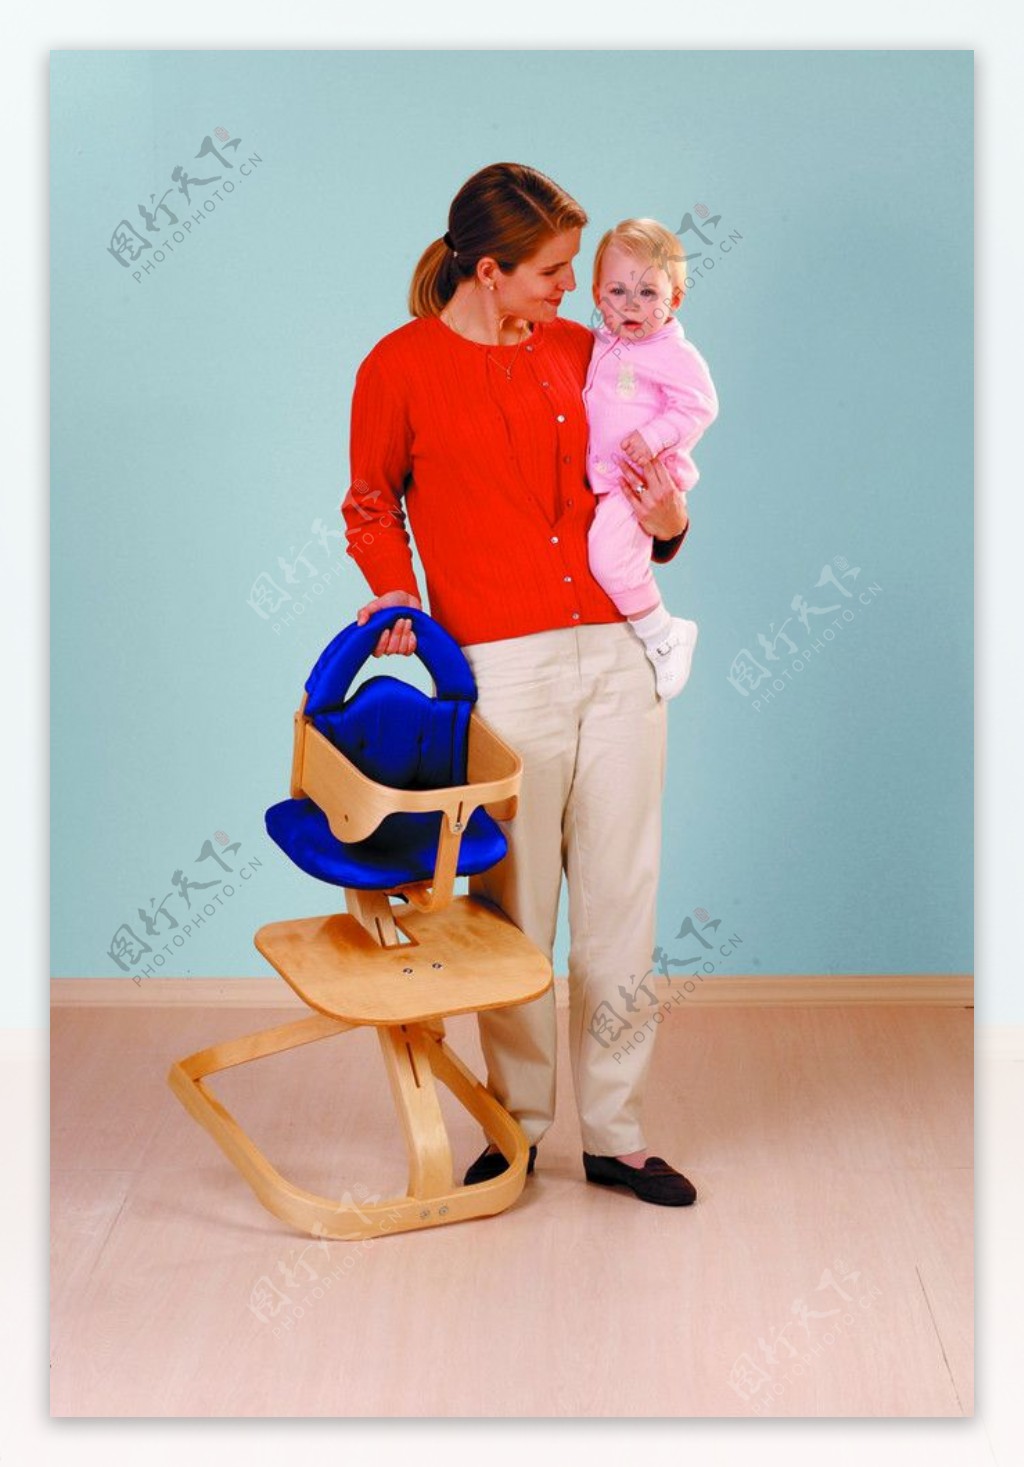 娃娃座椅图片